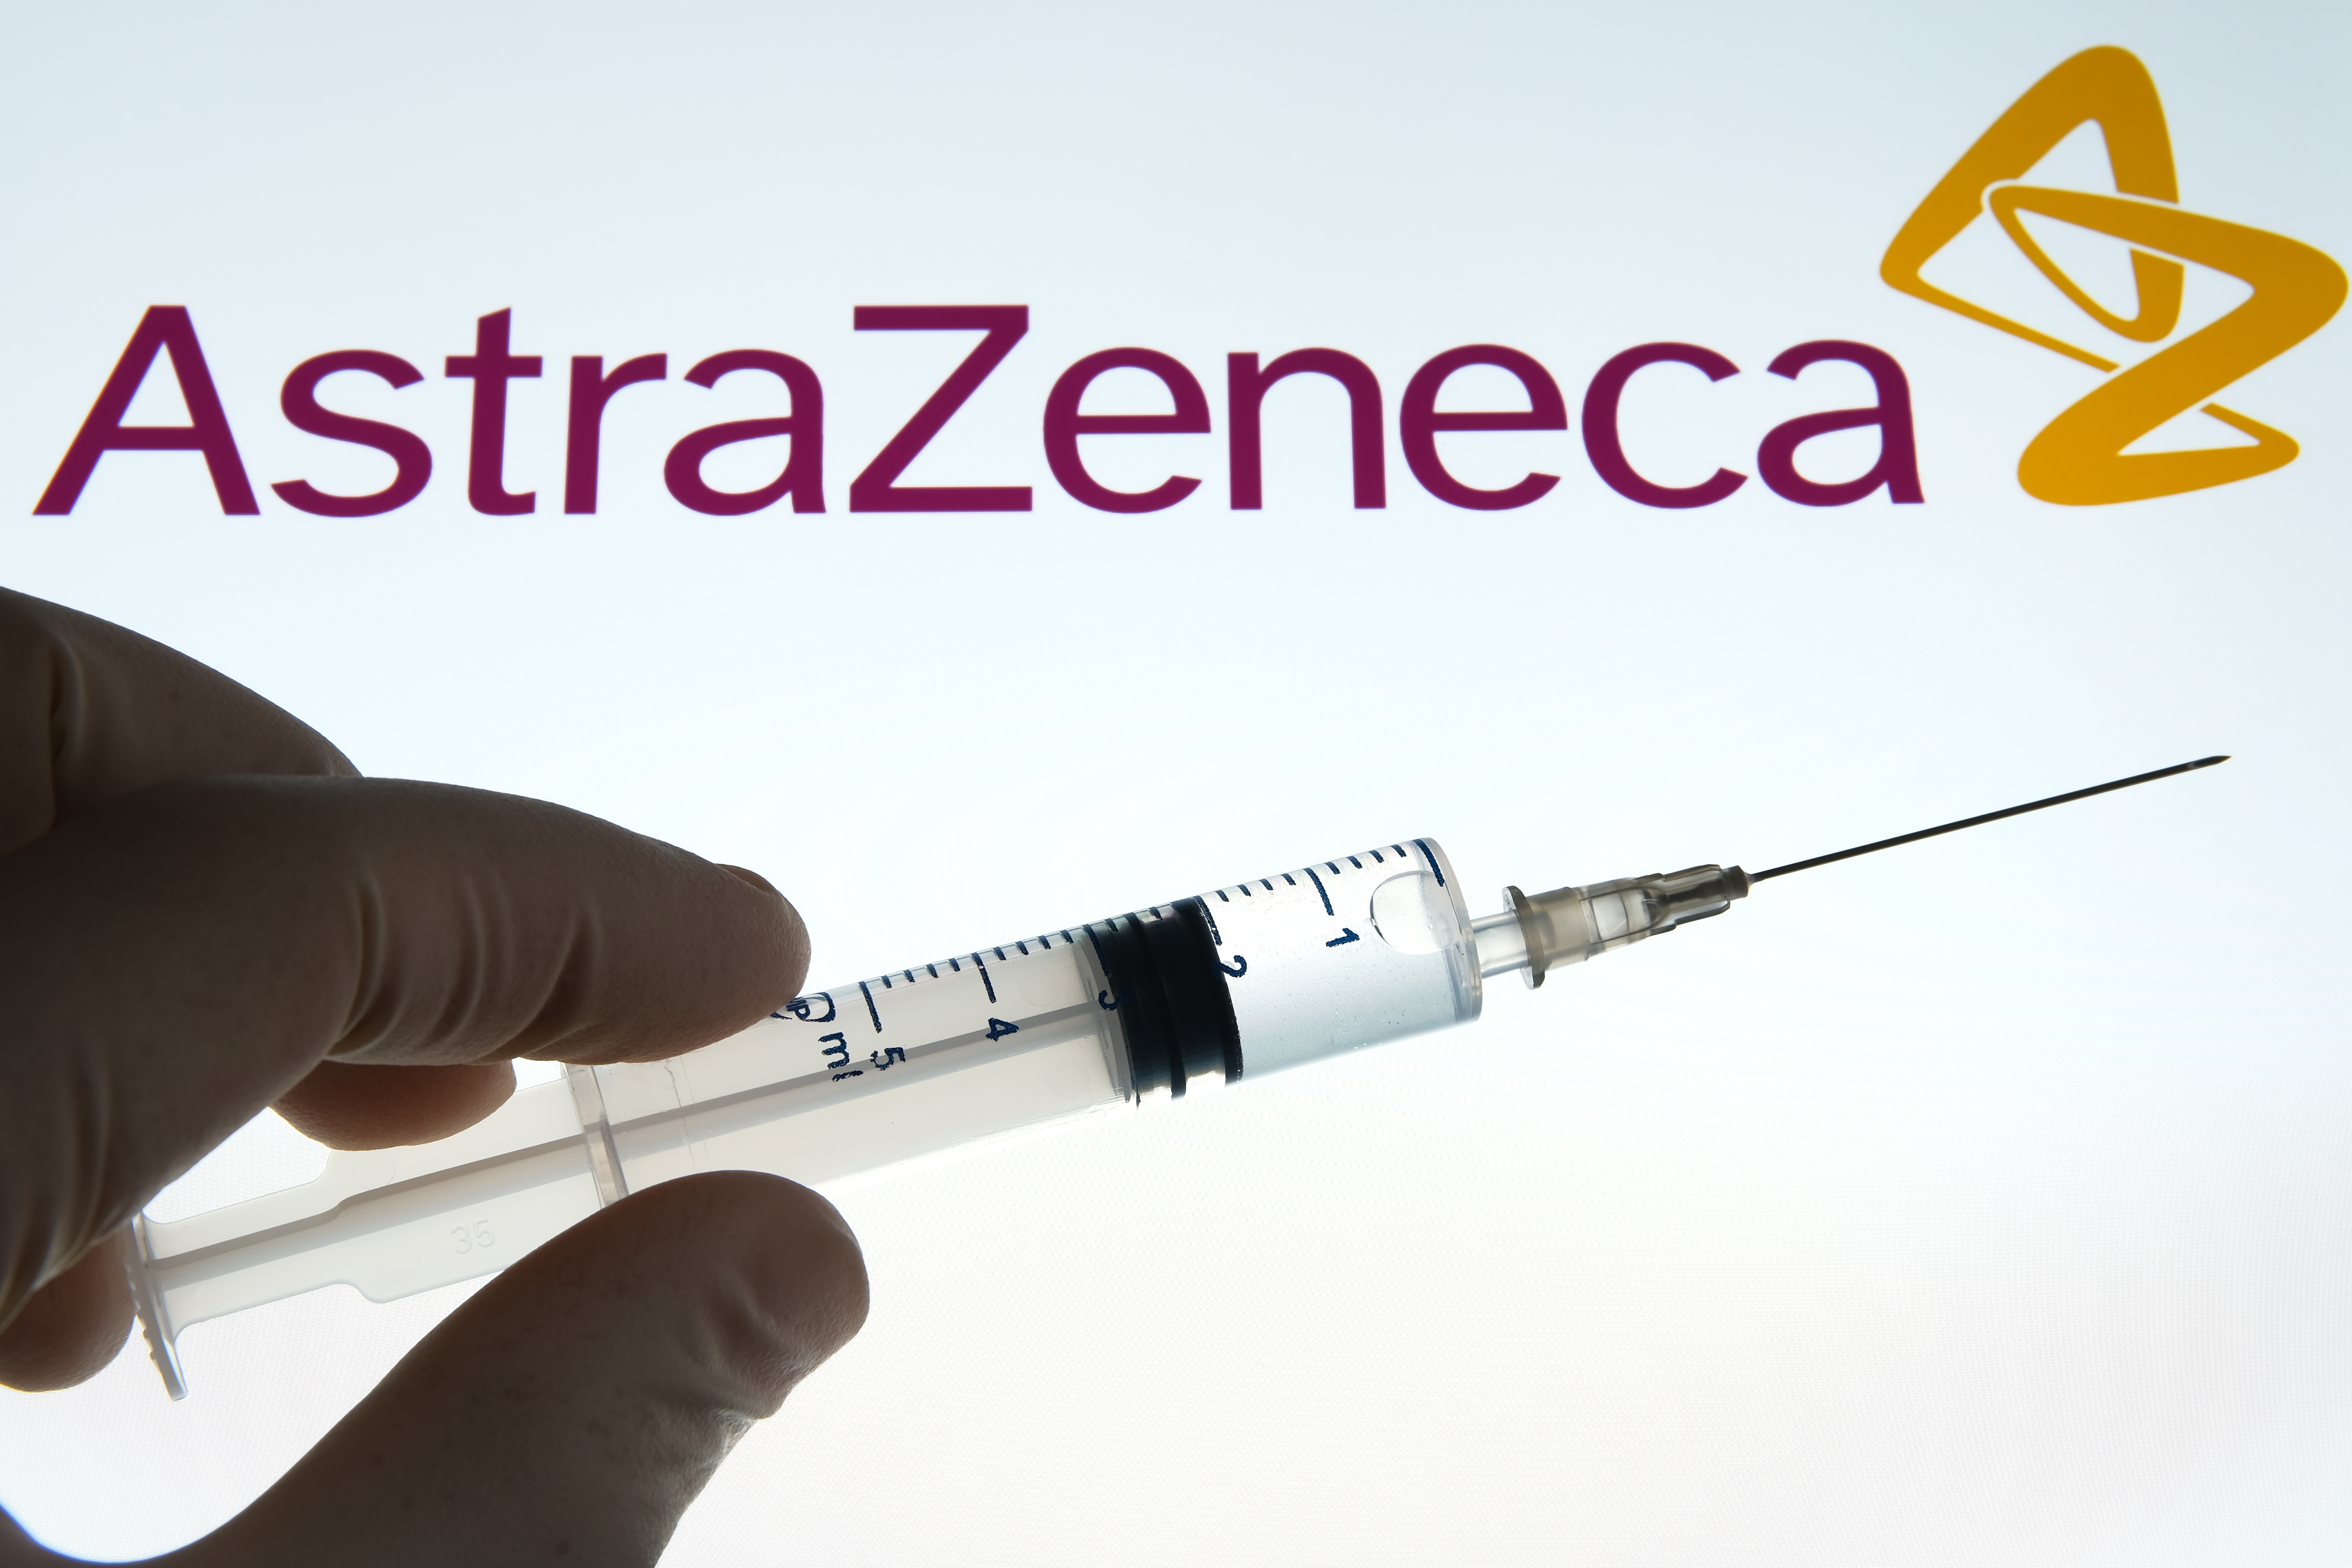 Este sau nu periculos vaccinul dezvoltat de compania AstraZeneca împotriva maladiei COVID-19?